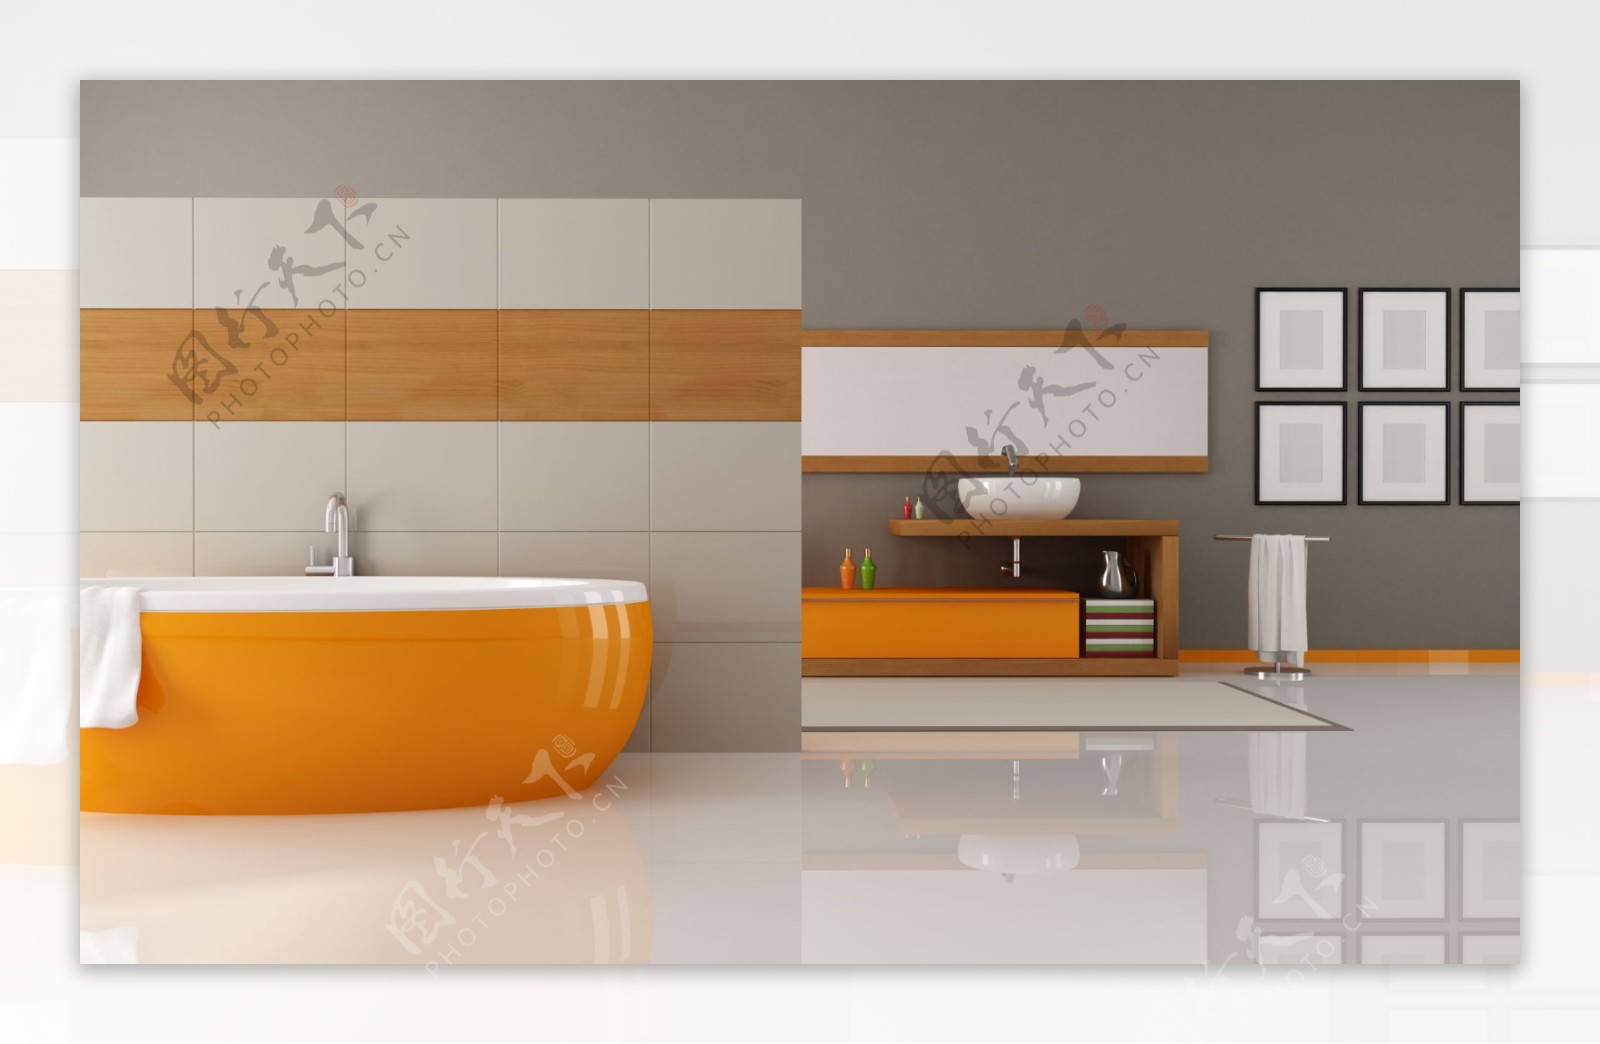 现代风格浴室装饰设计